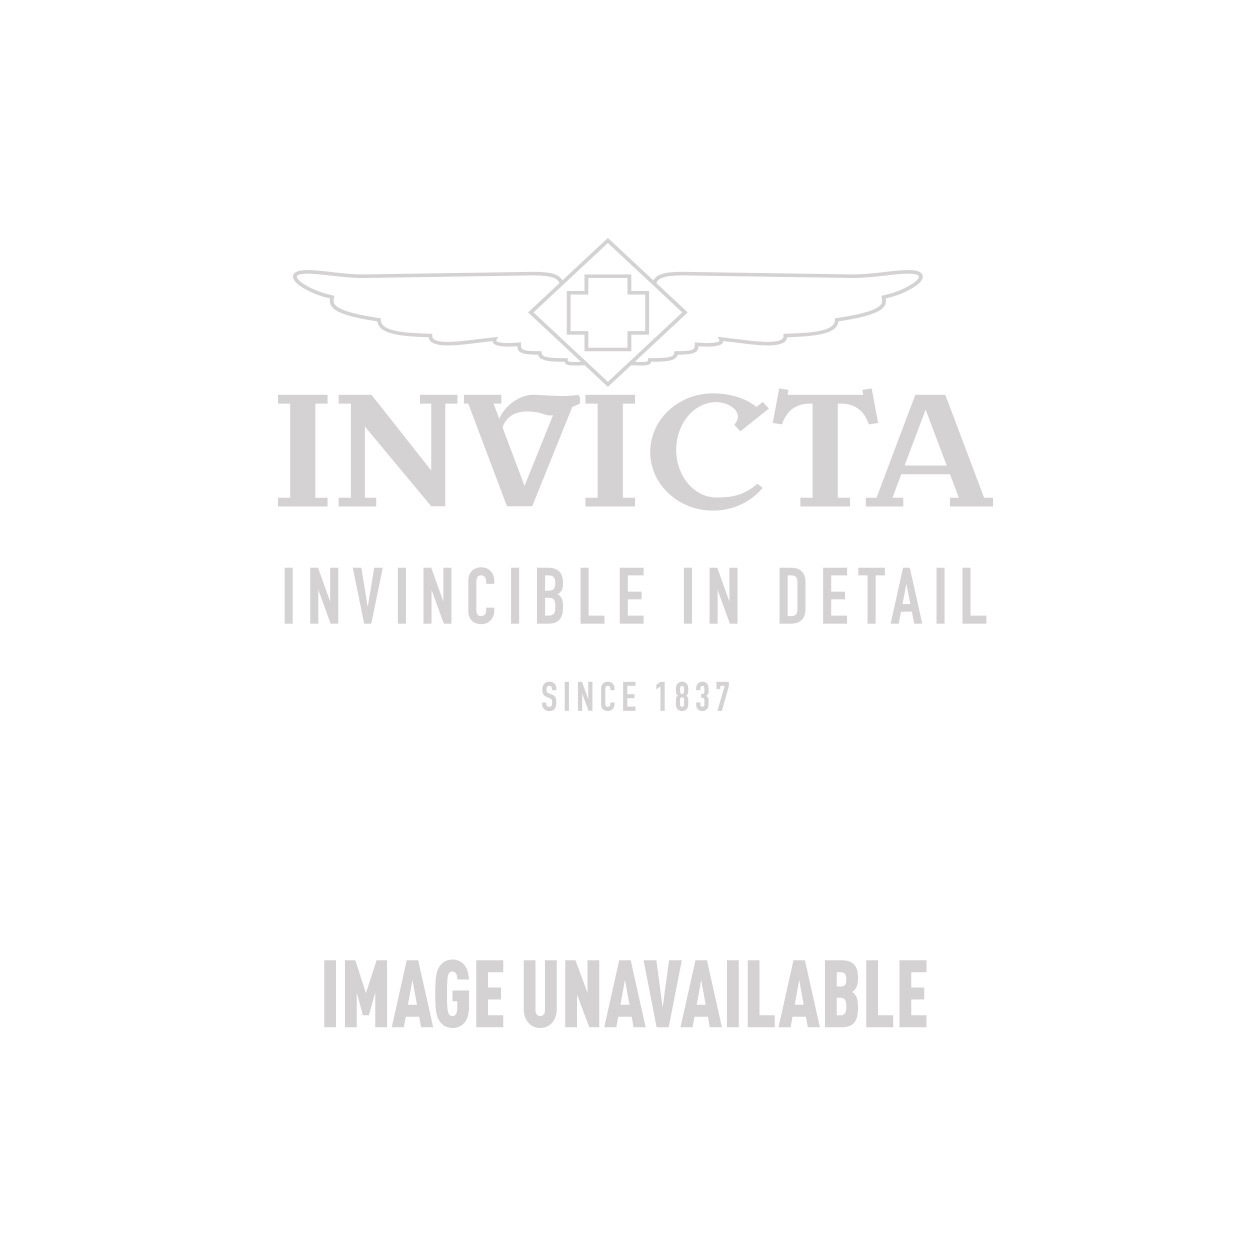 Invicta Diver Men's Watch (Mod: 28003) | Invicta Watches